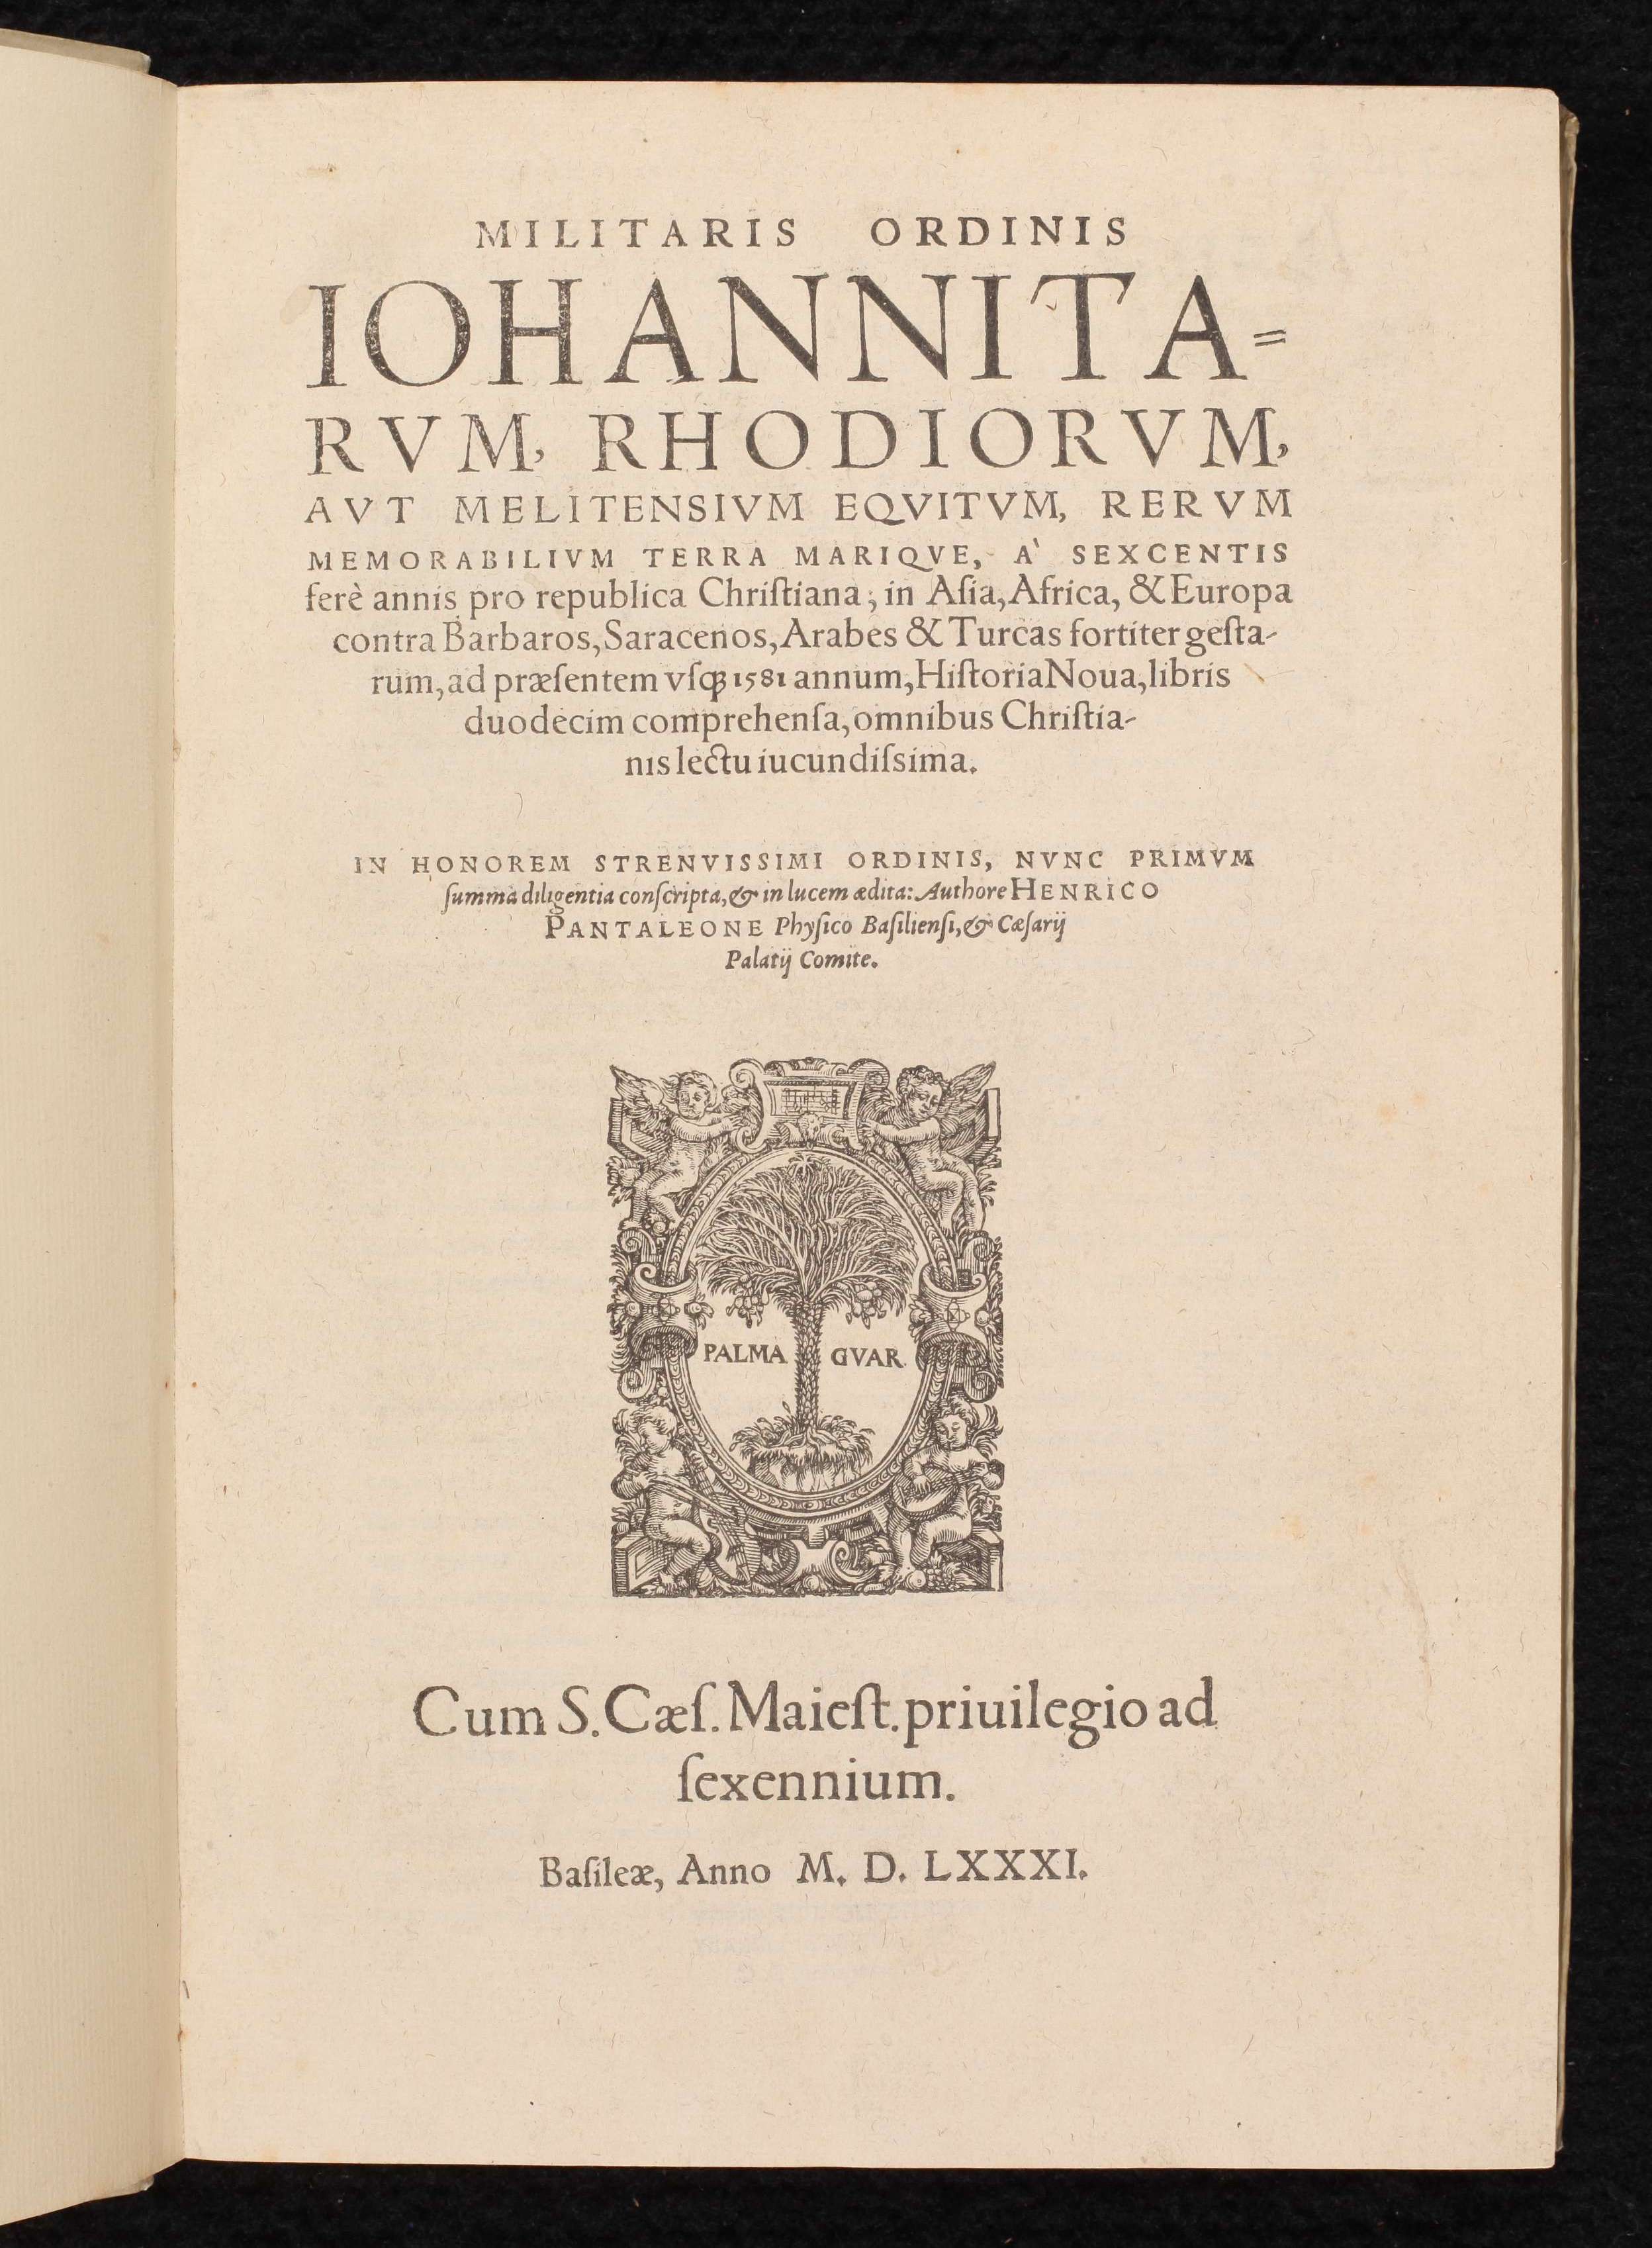 title page of Militaris ordinis Iohannitarum, Rhodiorum, aut Melitensium equitum